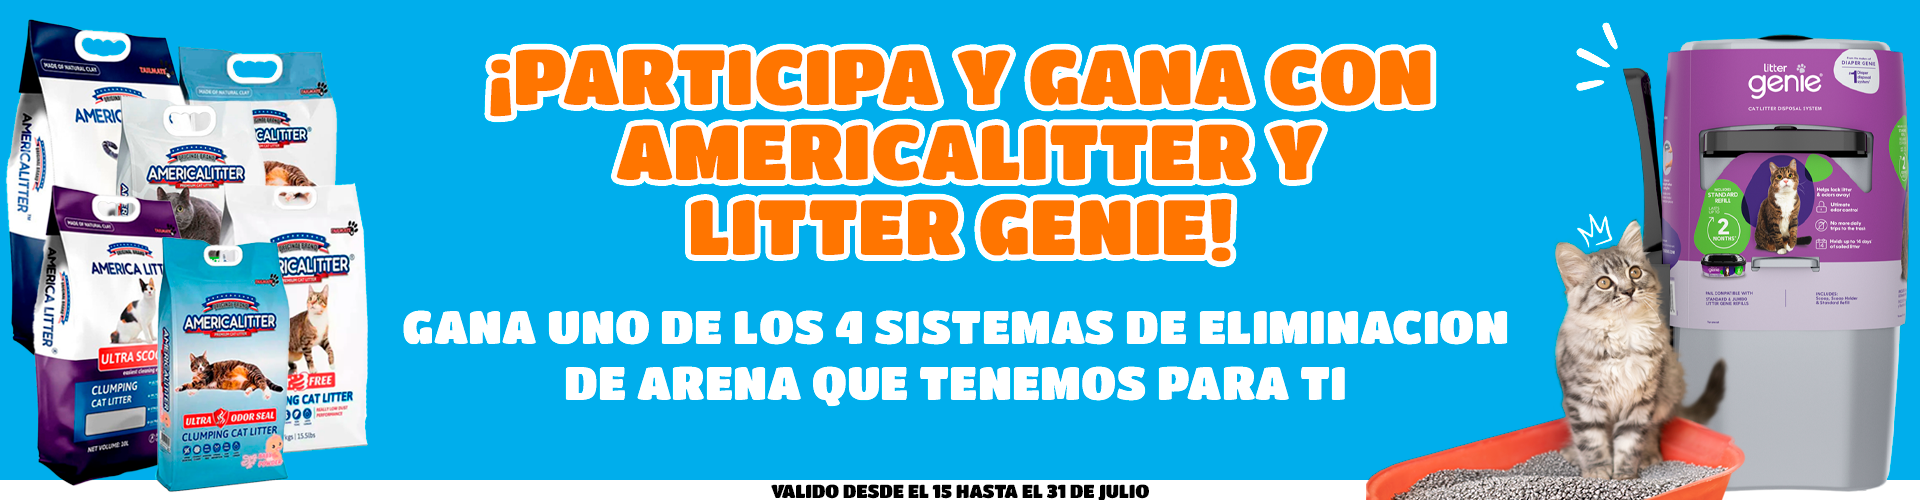 Banner_America_Litter_Concurso (2)